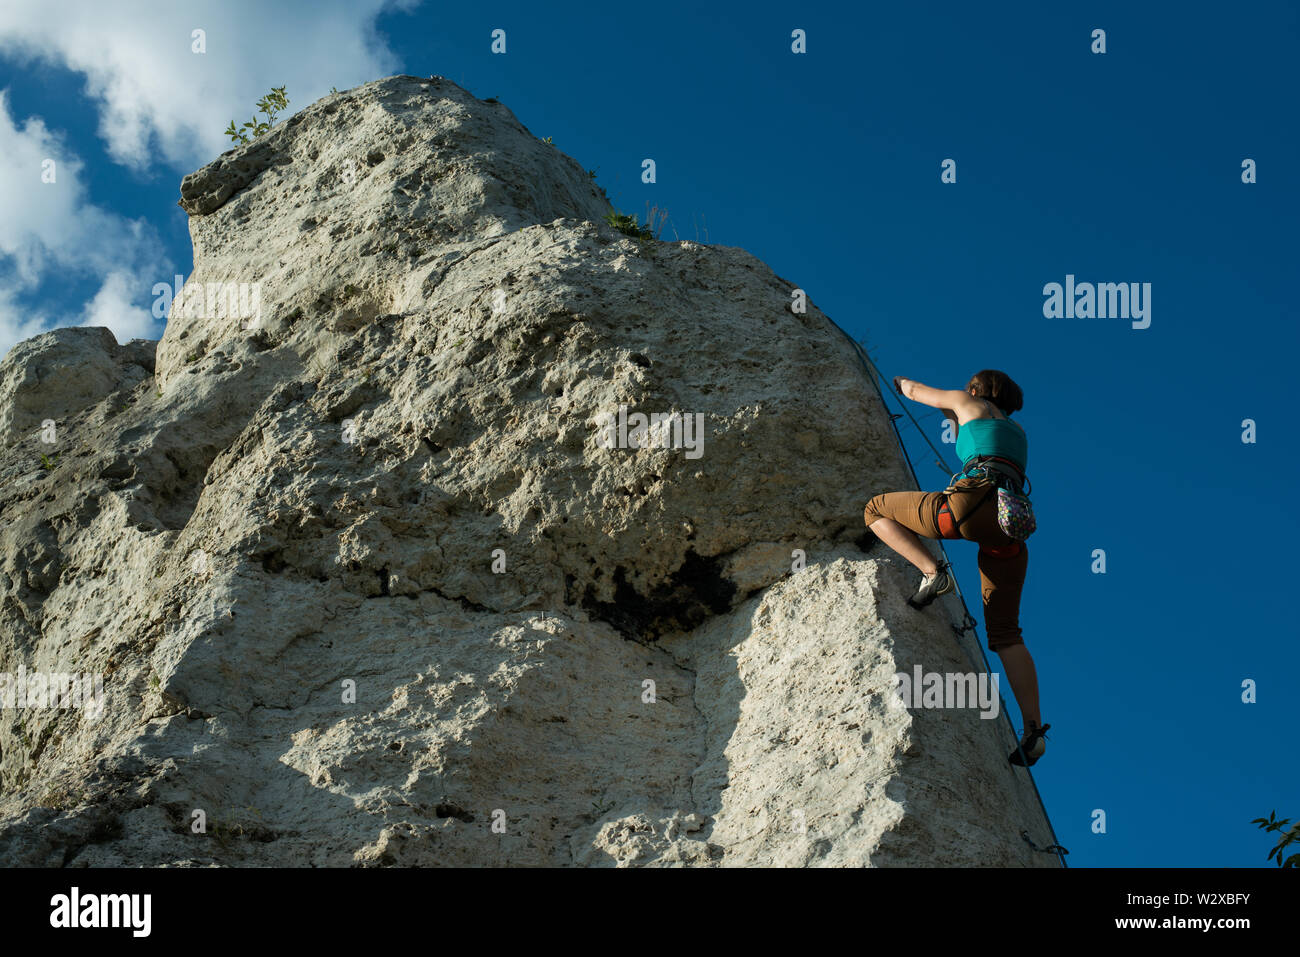 Women climbing vertical wall, Poland Stock Photo